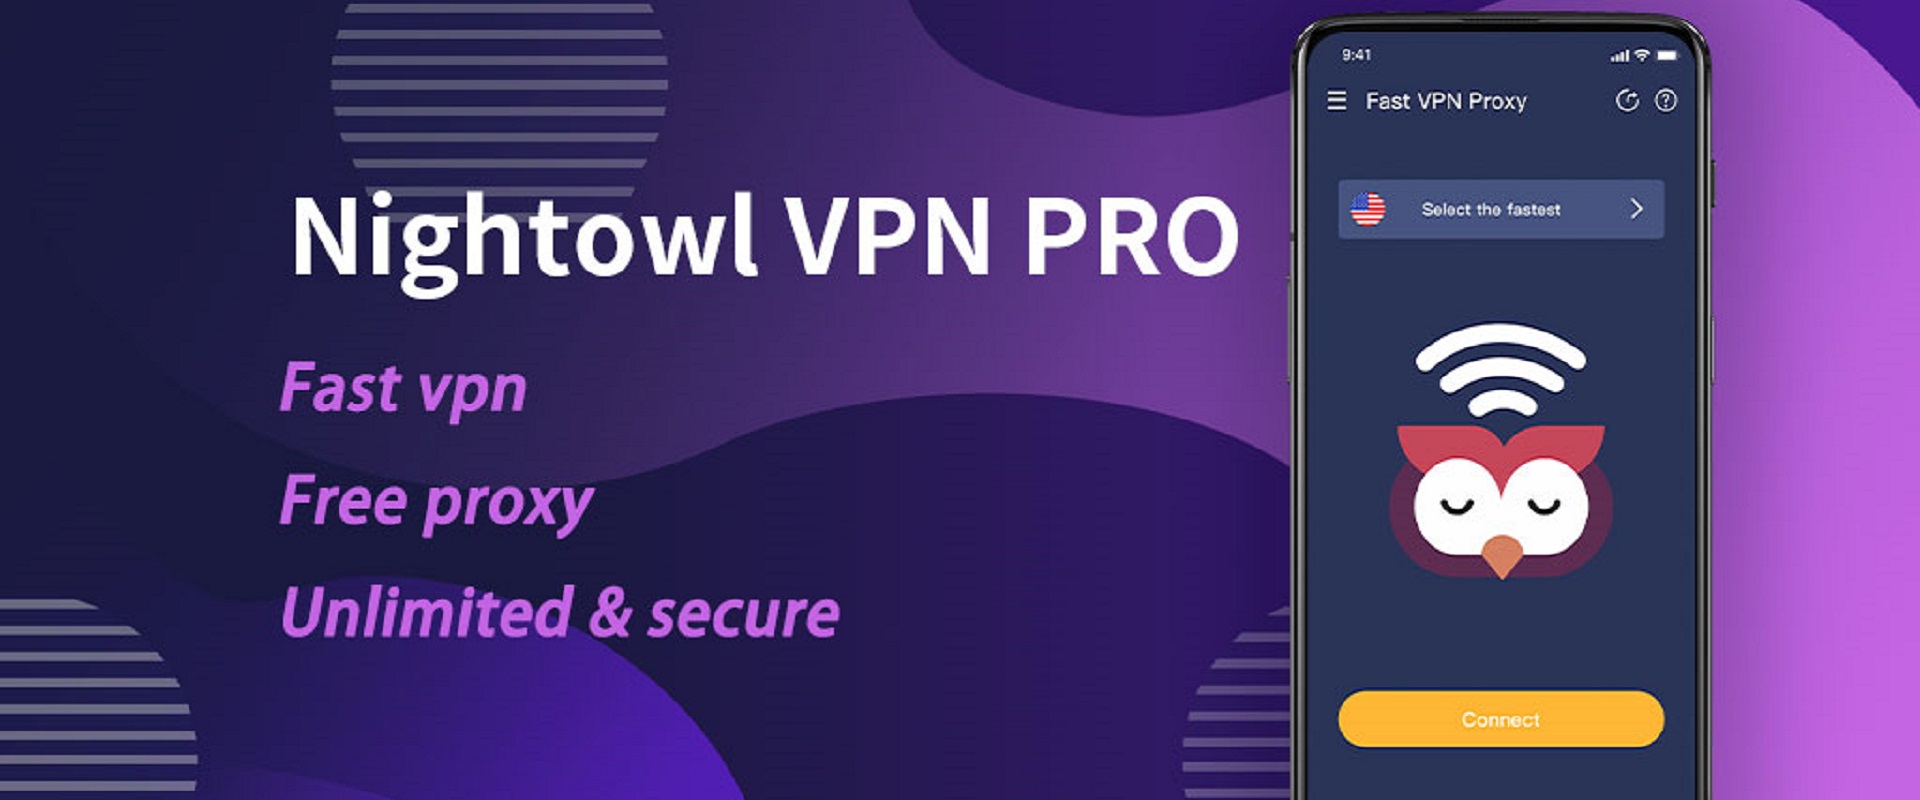 ดาวน์โหลดและเล่น NightOwl VPN PRO - Fast , Free, Unlimited, Secure บน PC ด้วย NoxPlayer โปรแกรมจำลองฟรี